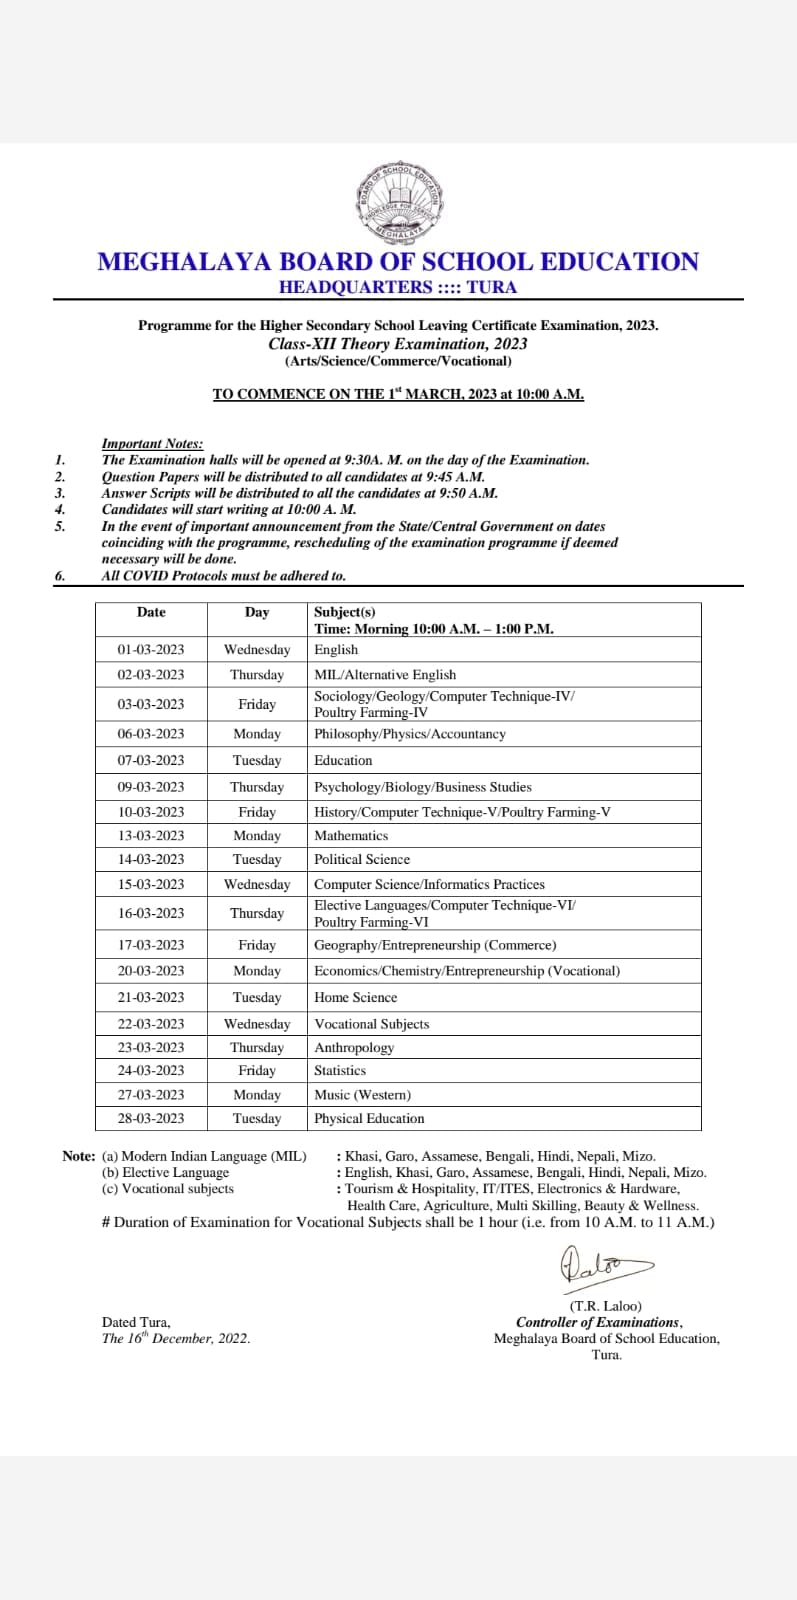 MBOSE Meghalaya Class 12 date sheet 2023